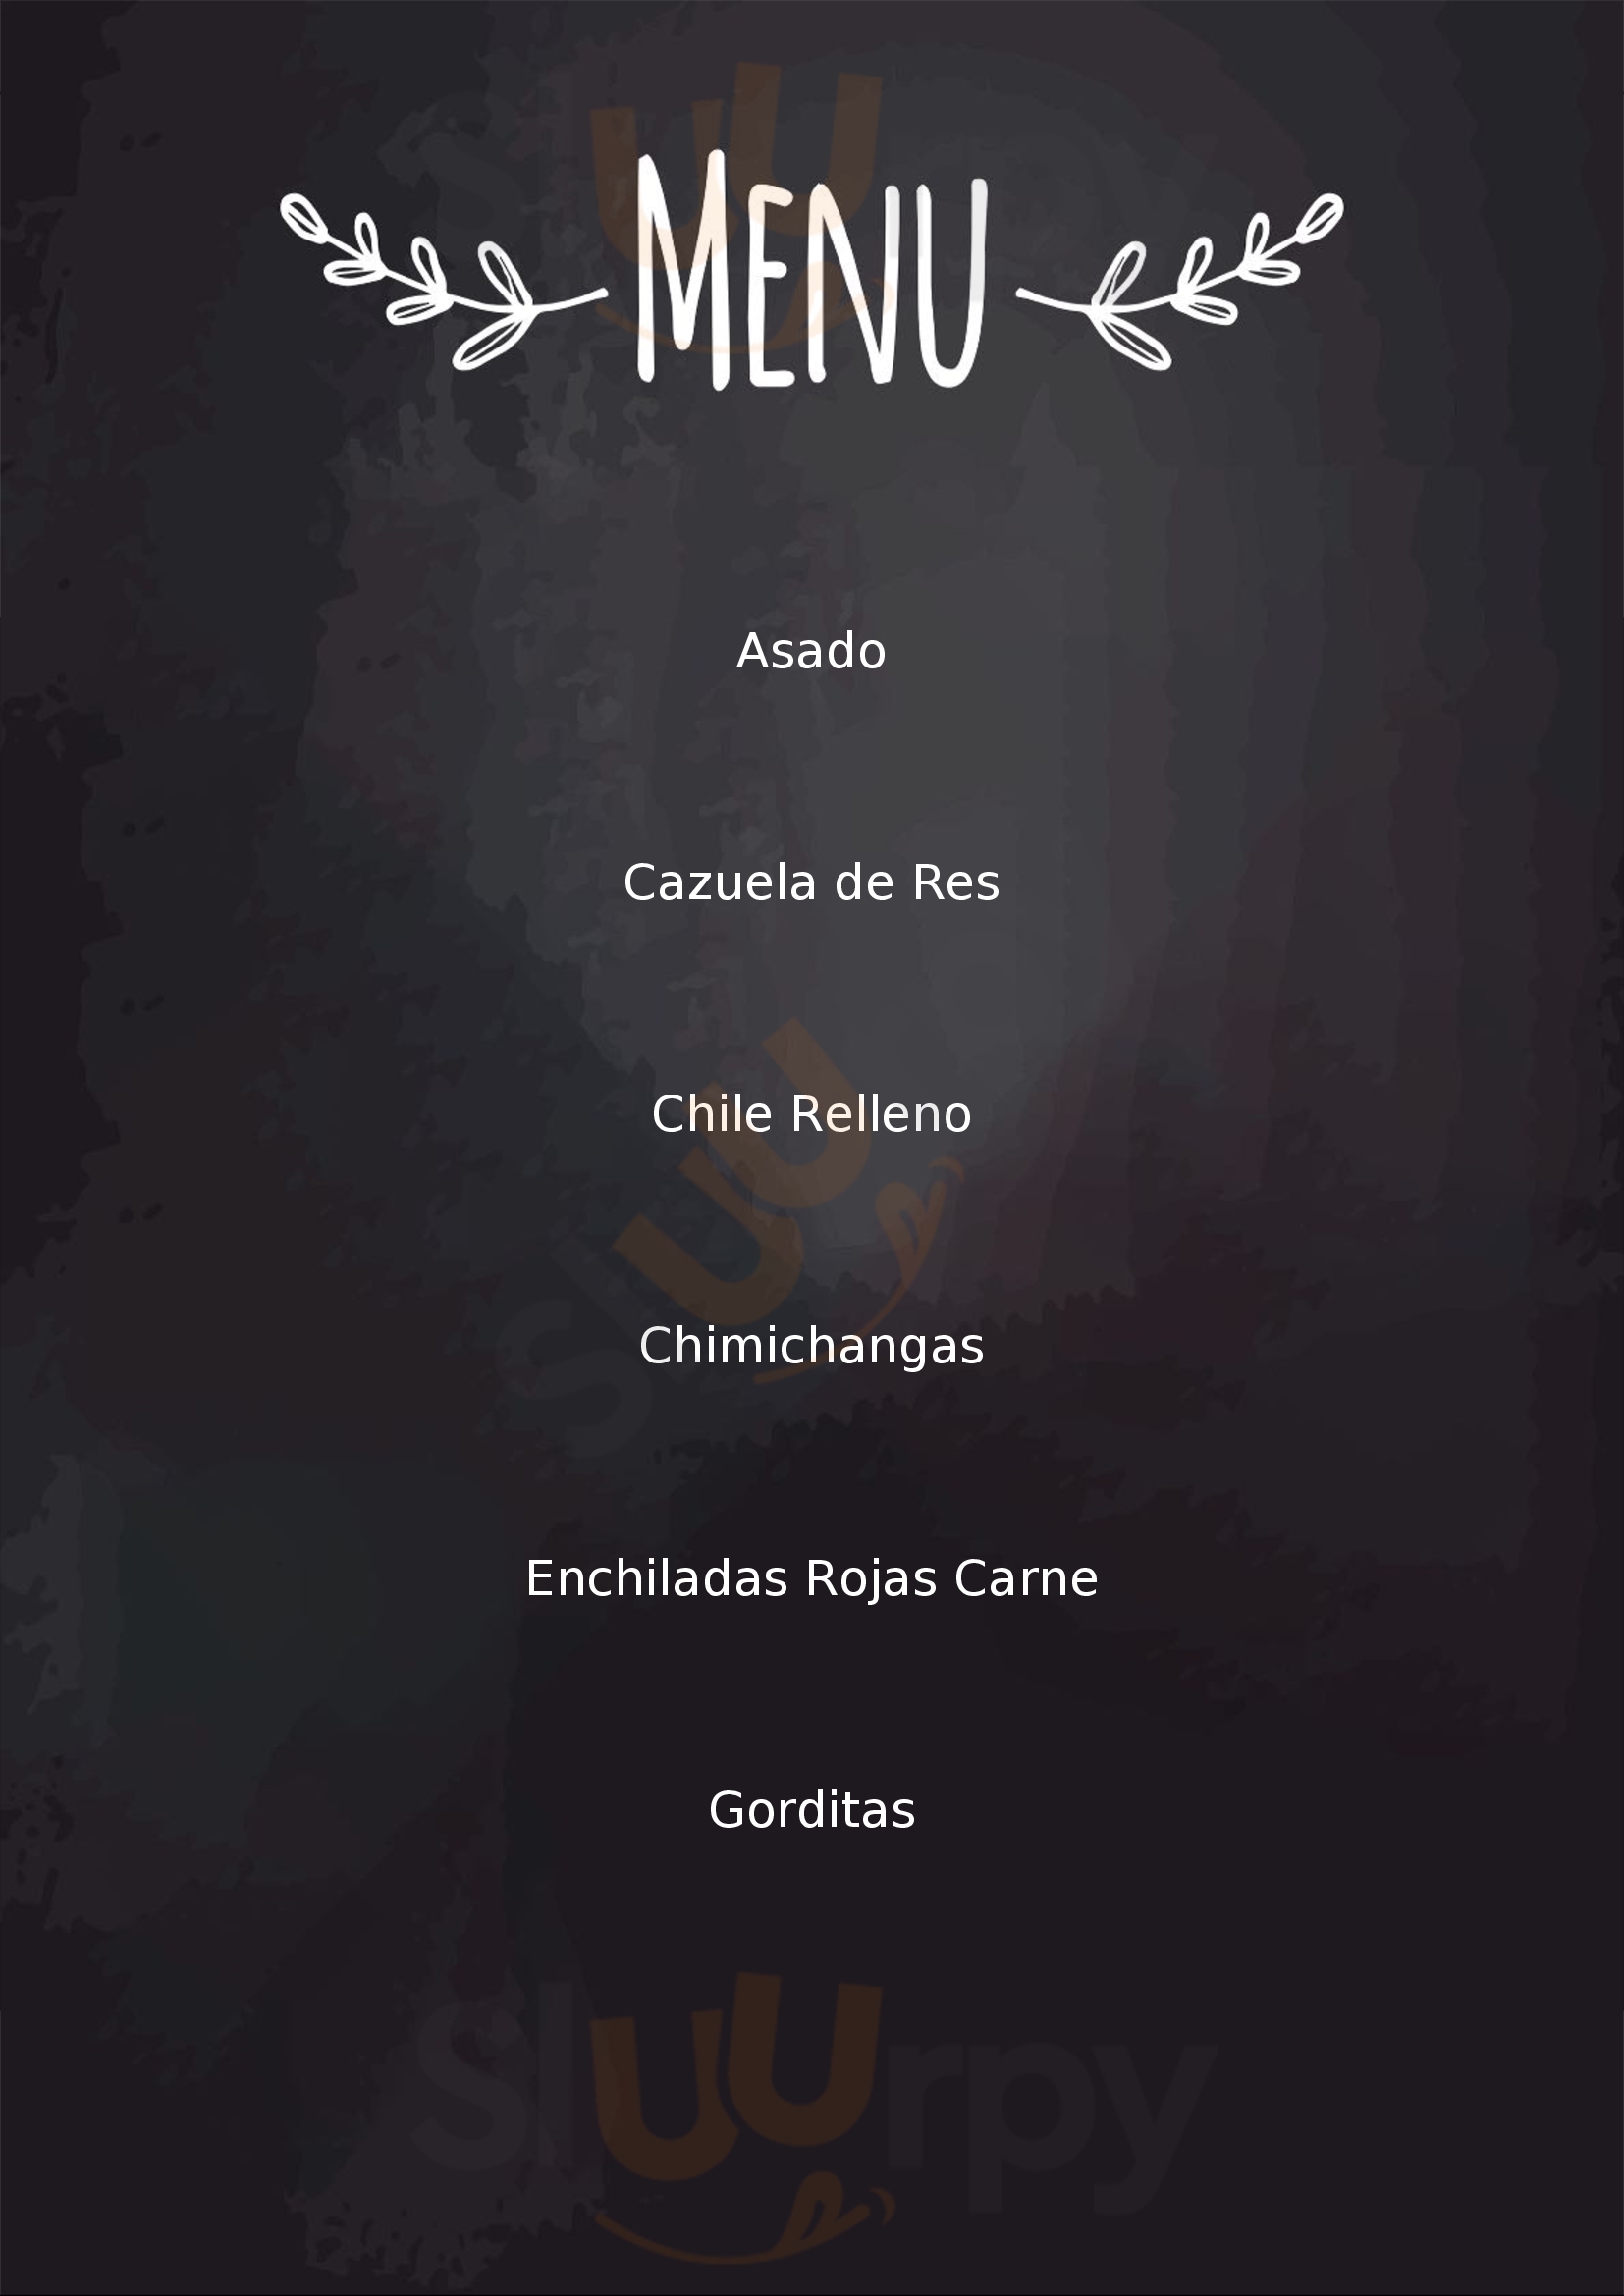 Antojitos Las Delicias De Los Mochis Los Mochis Menu - 1